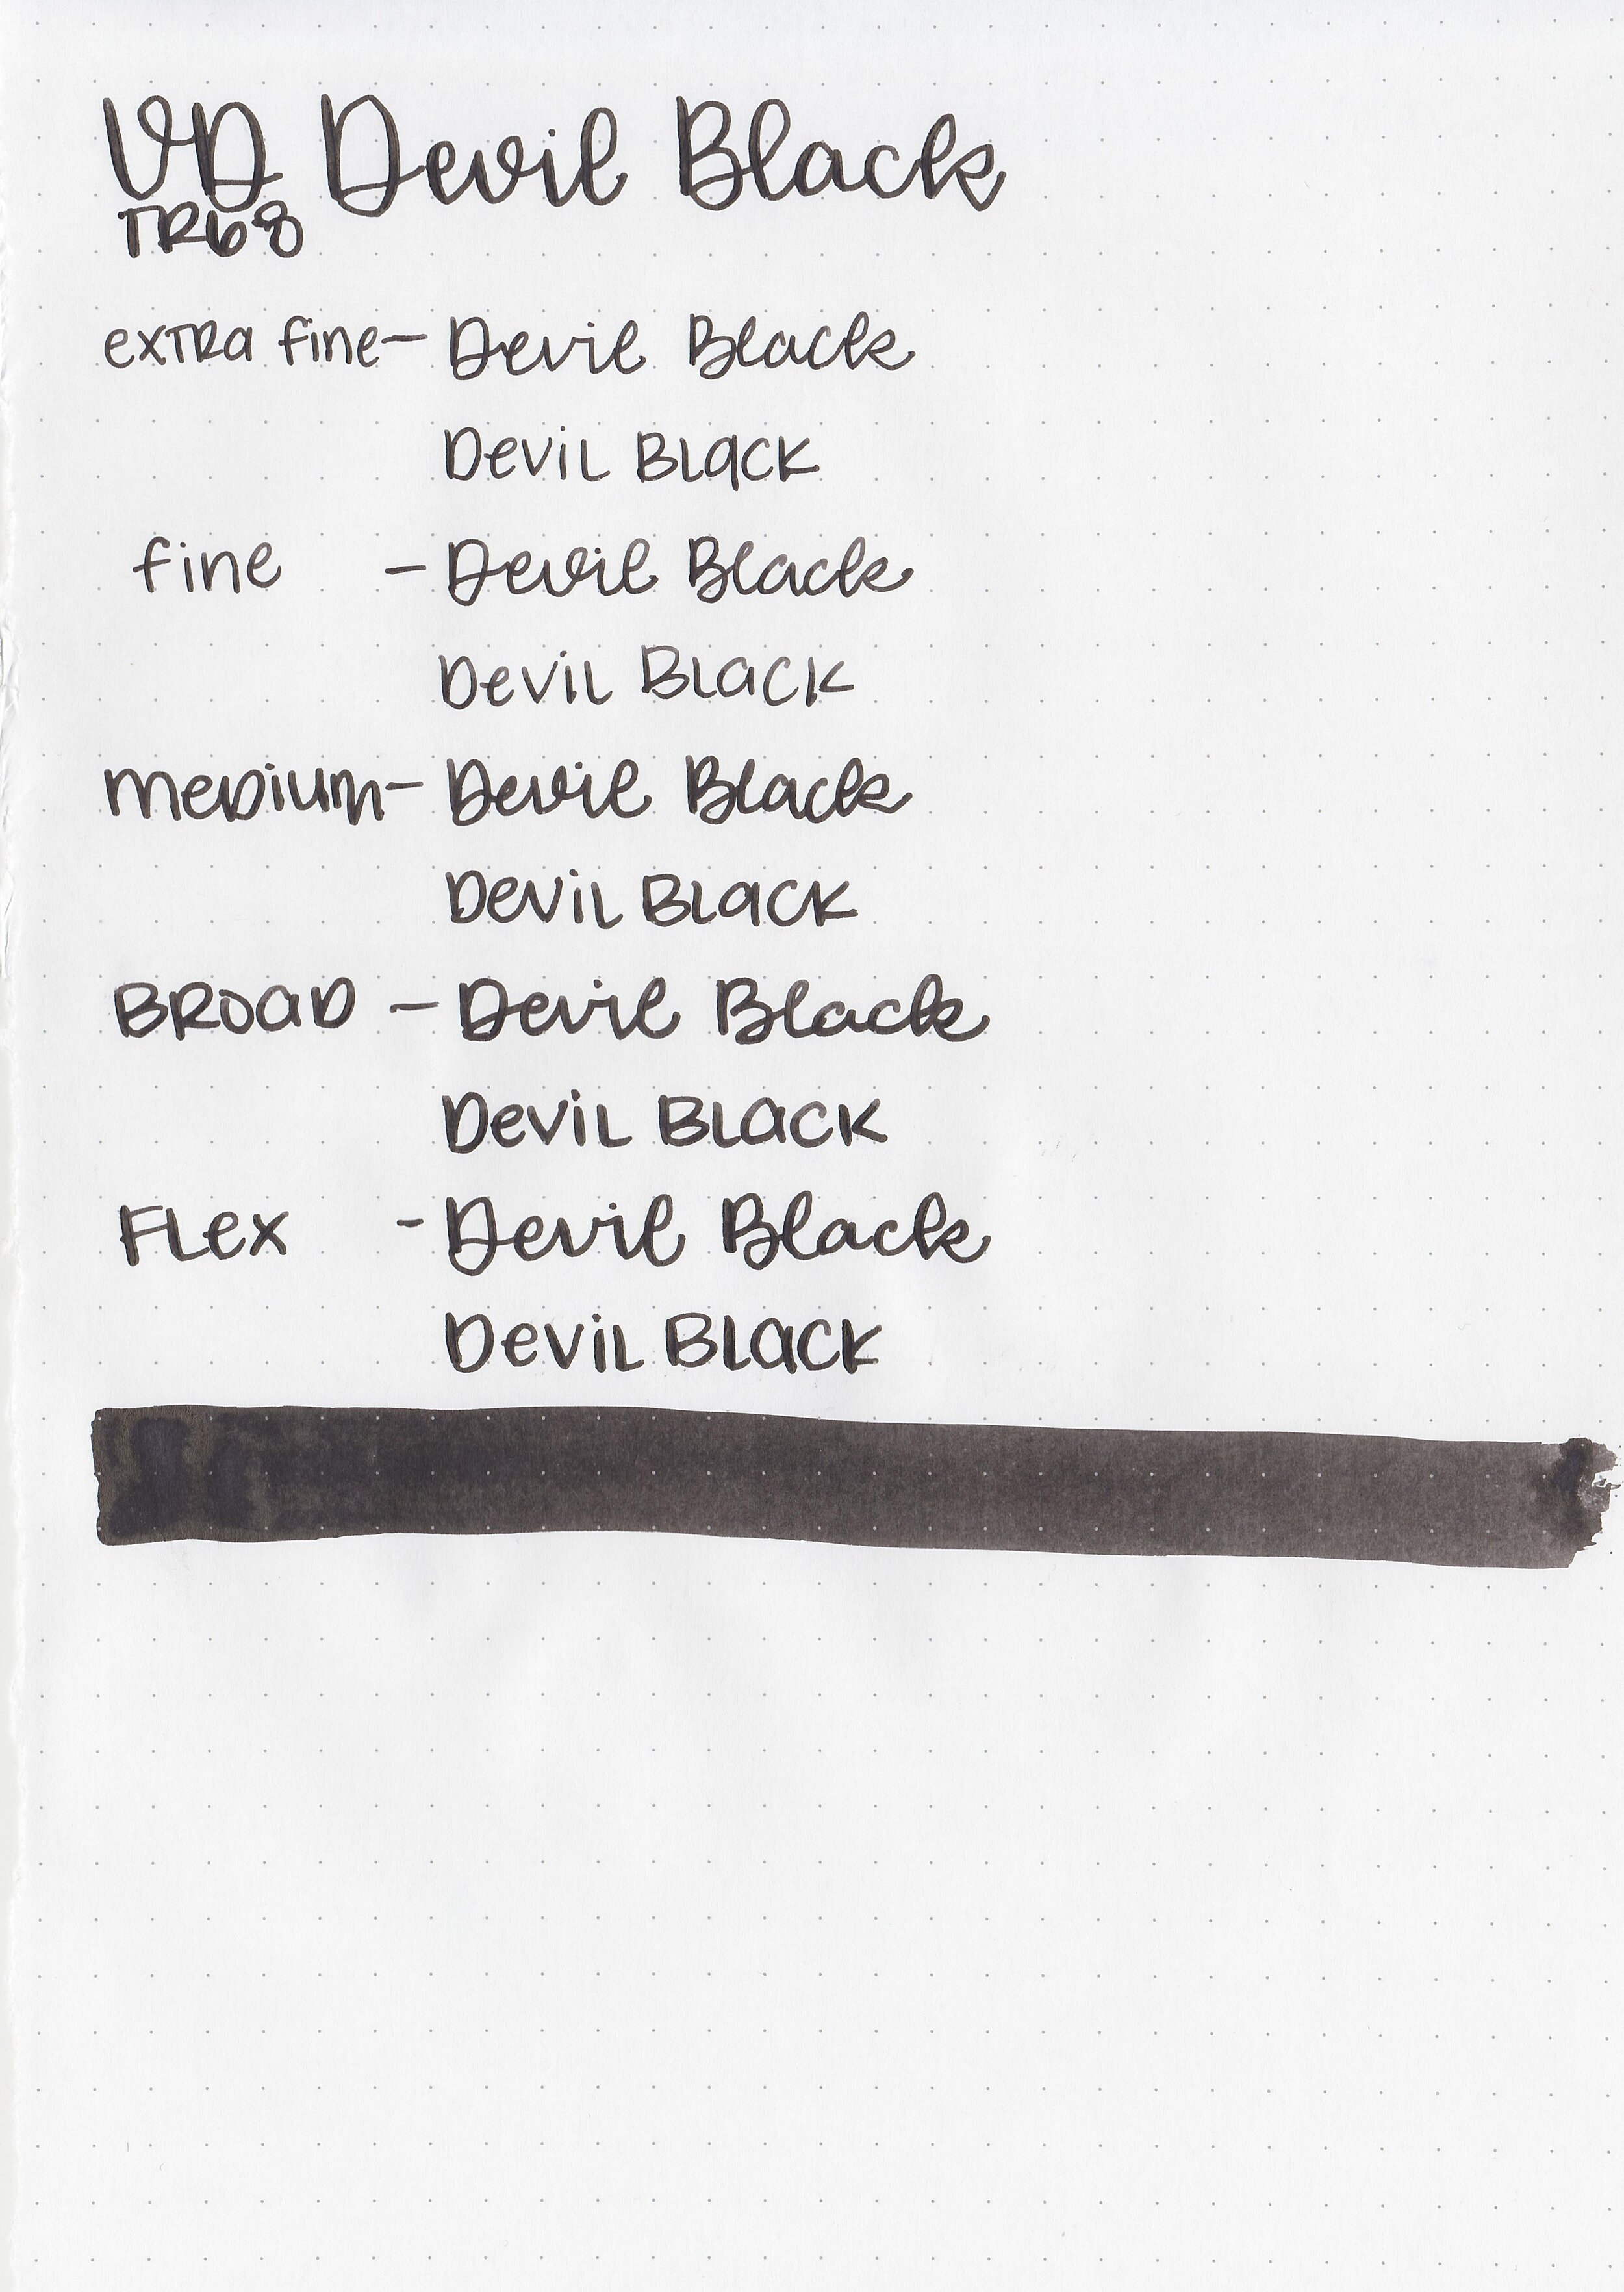 vd-devil-black-6.jpg